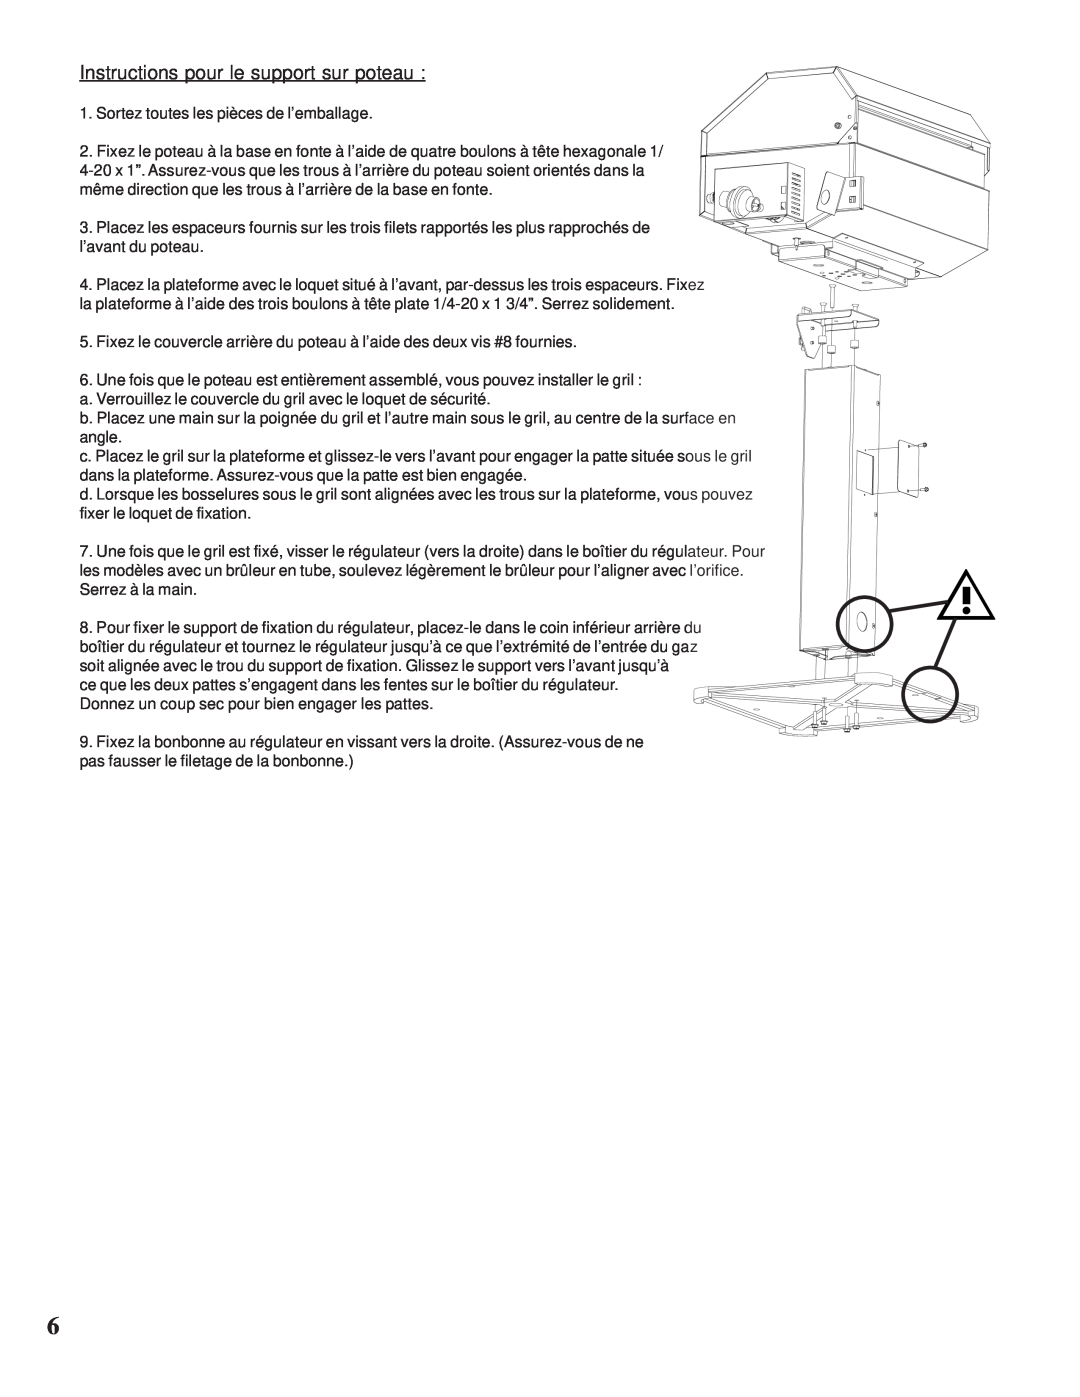 Napoleon Grills N415-0117 manual Instructions pour le support sur poteau 